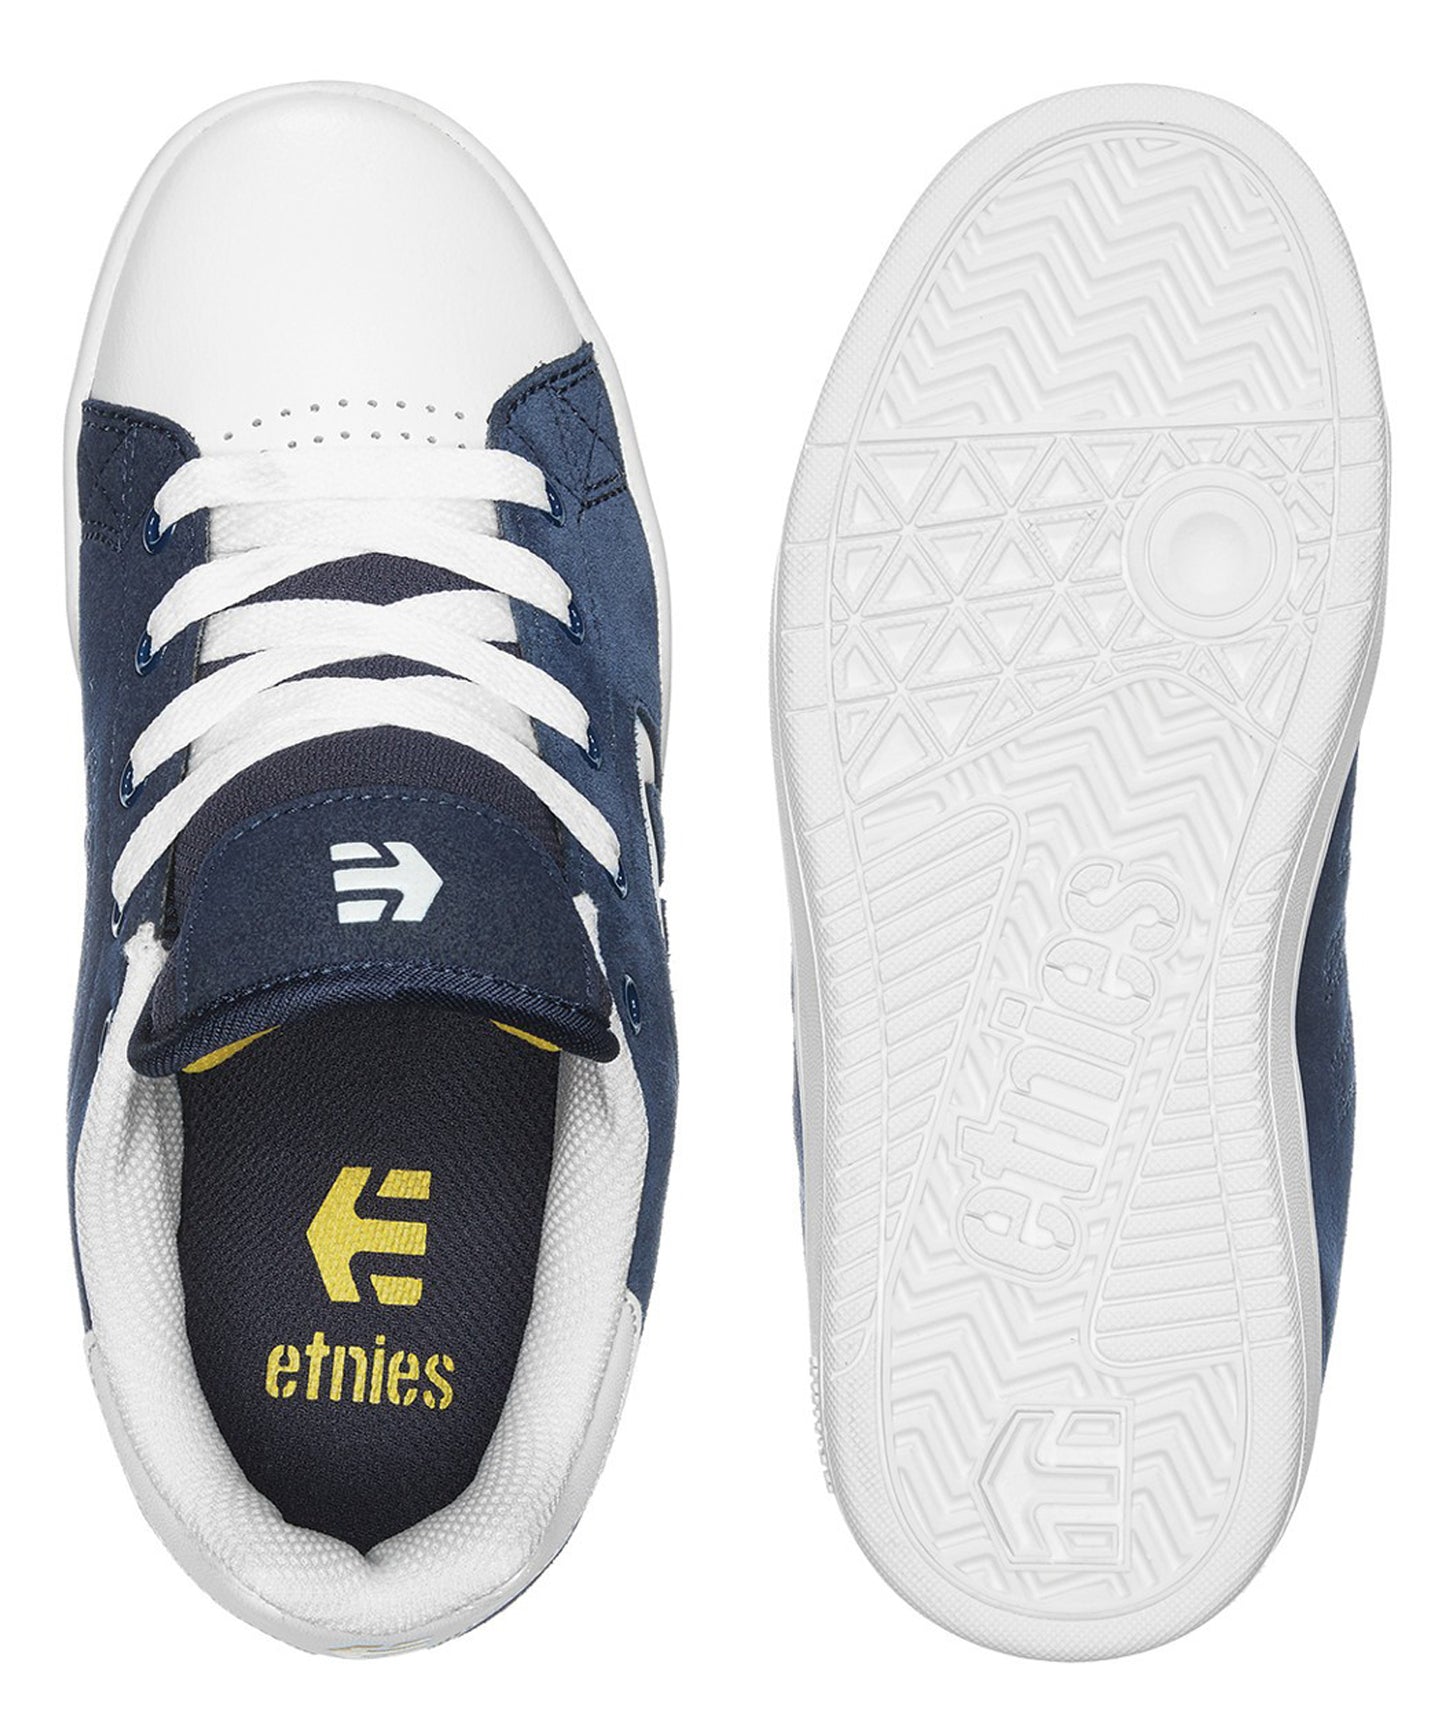 etnies-kids-calli-cut-navy-zapatillas para niños/as-color-azul-dura y resistente-perfecta para la práctica del skate-ante- sintético